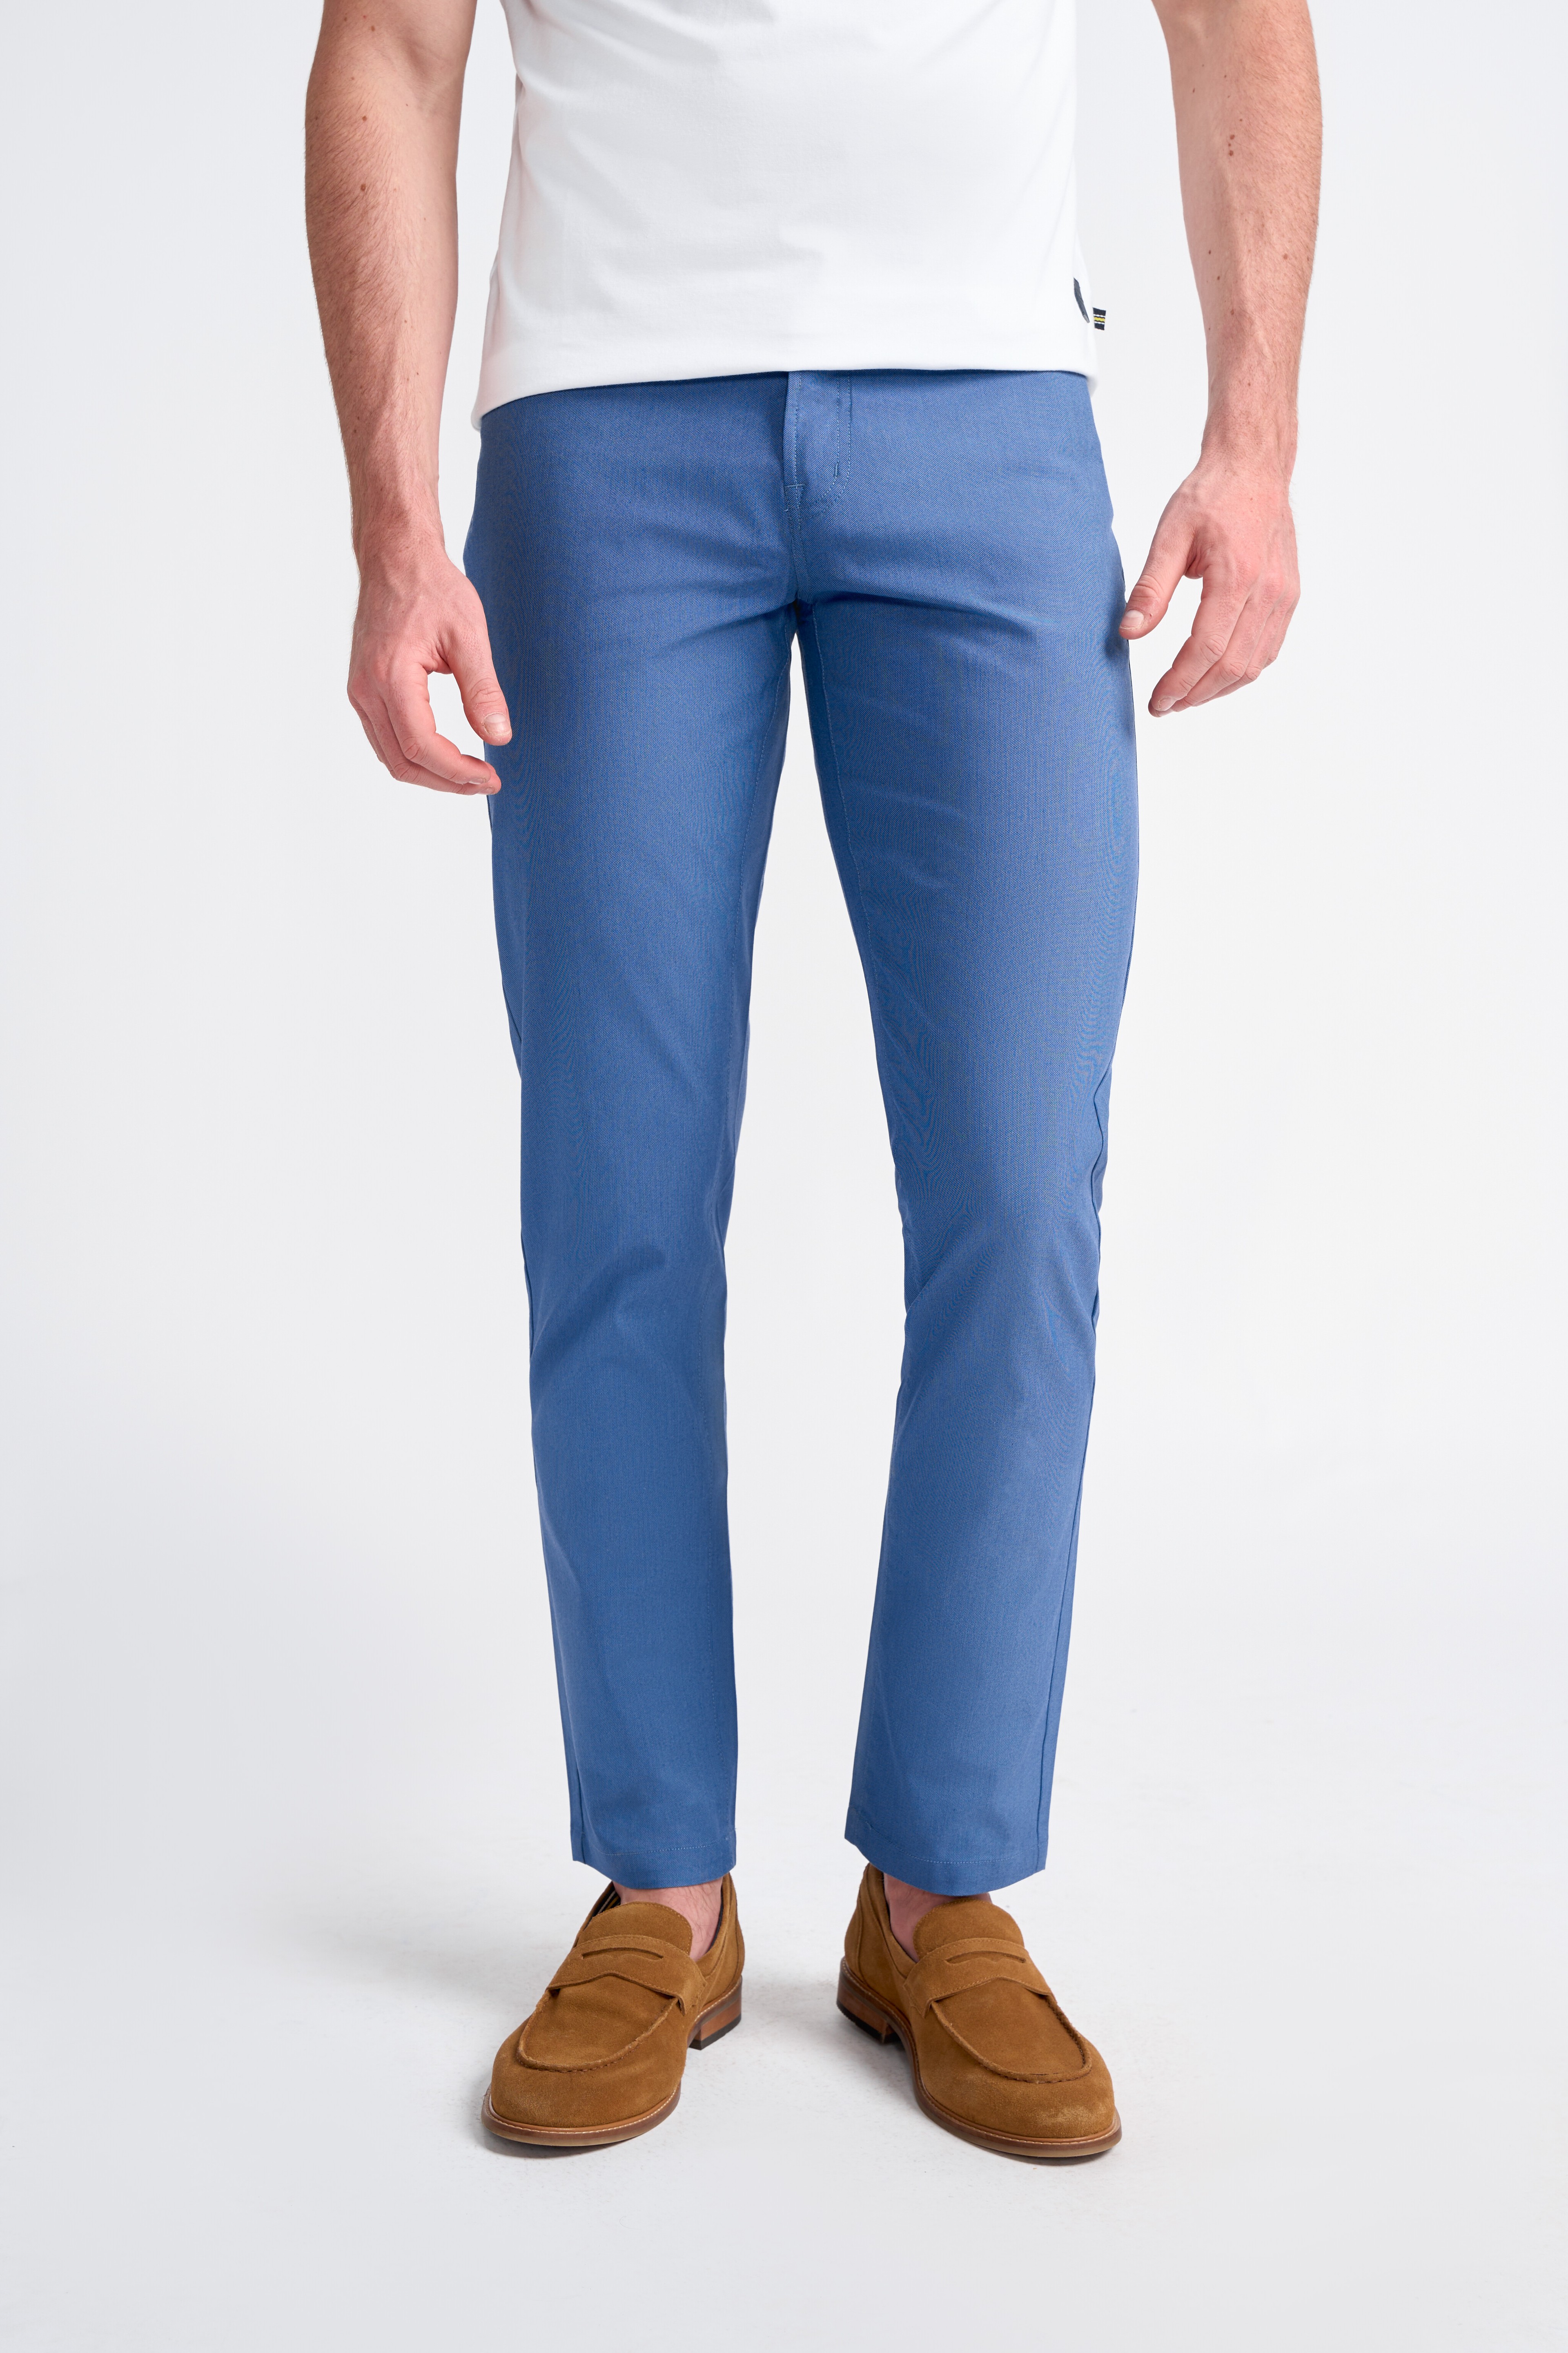 Men’s Cotton Blend Jean Cut Chino Trousers – DALTON